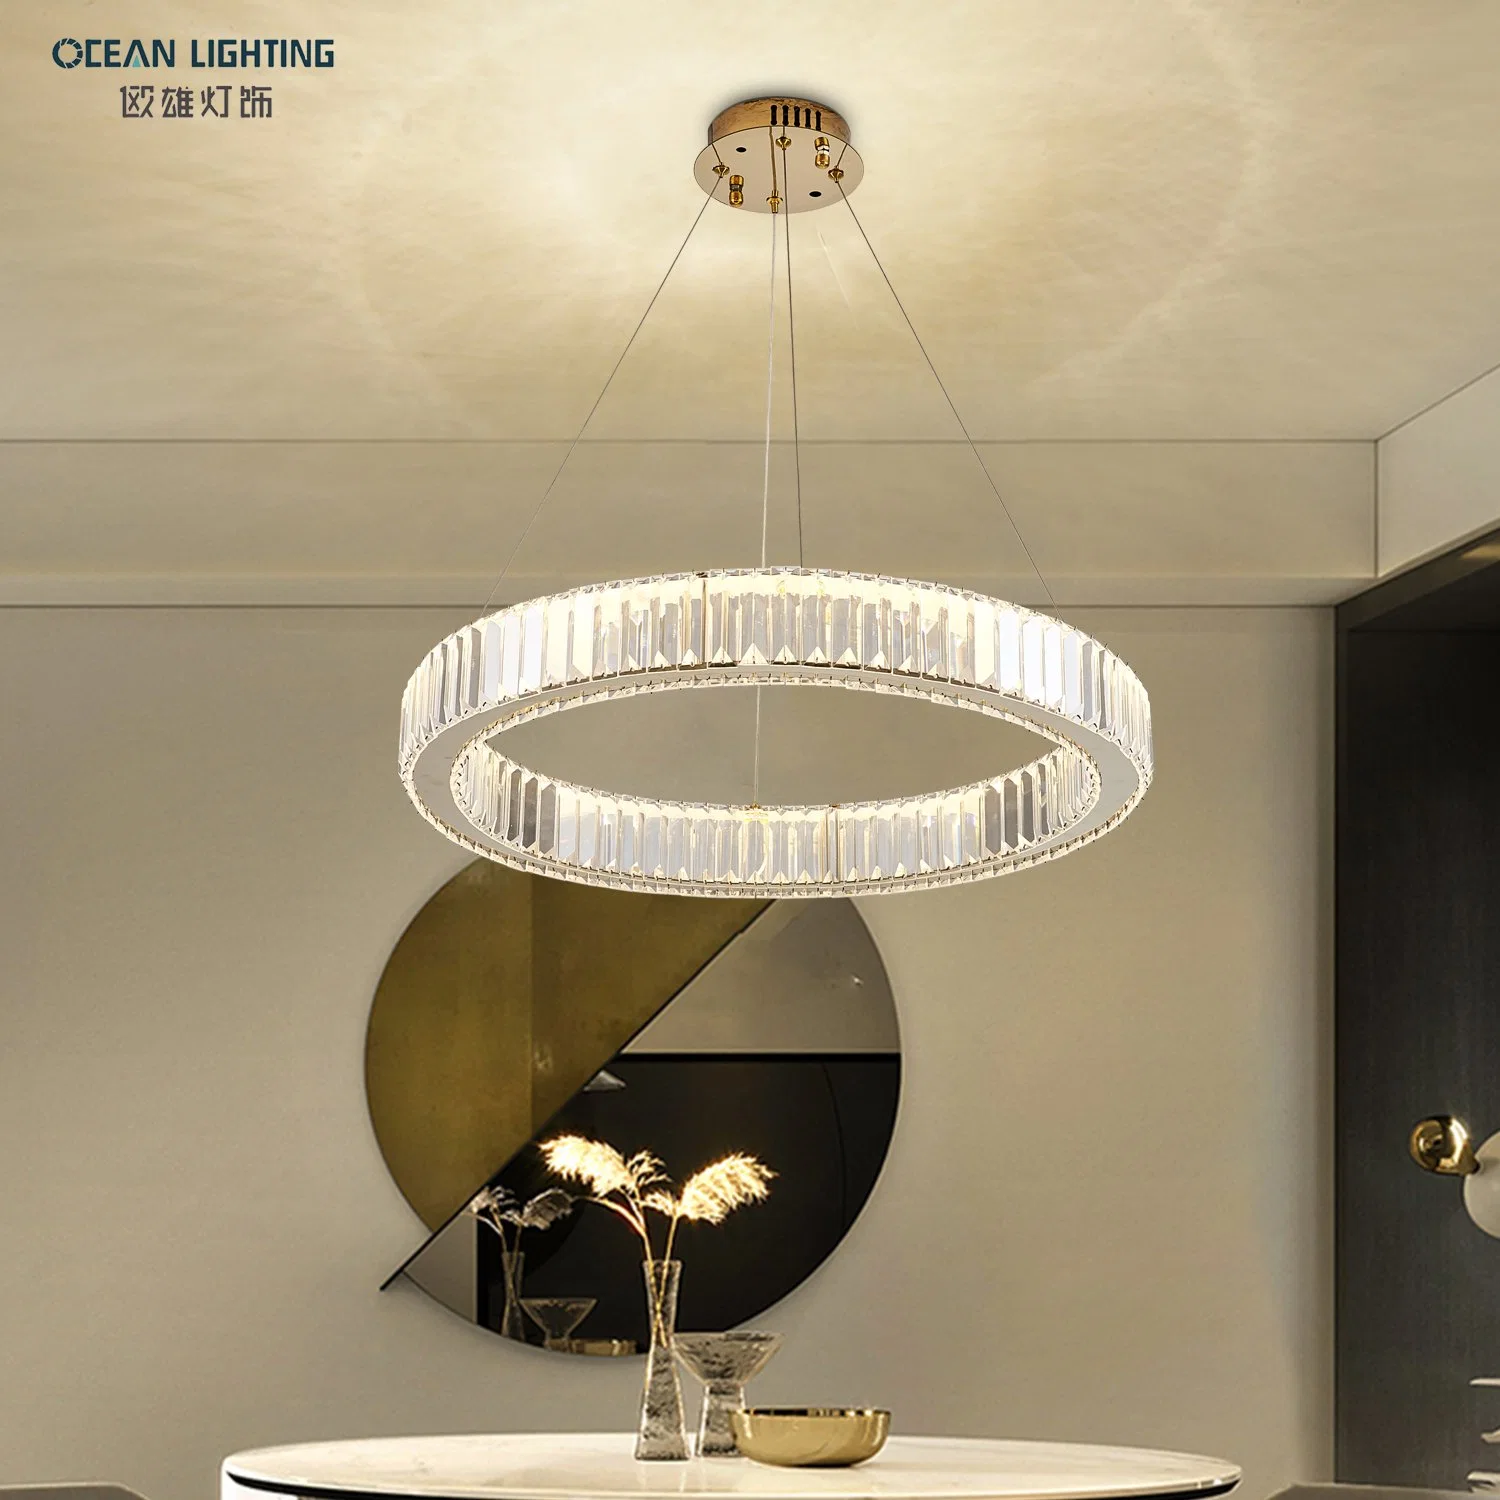 Океан освещение современные, роскошные современные светодиодные украшения для использования внутри помещений большой круг LED Crystal подвесной светильник